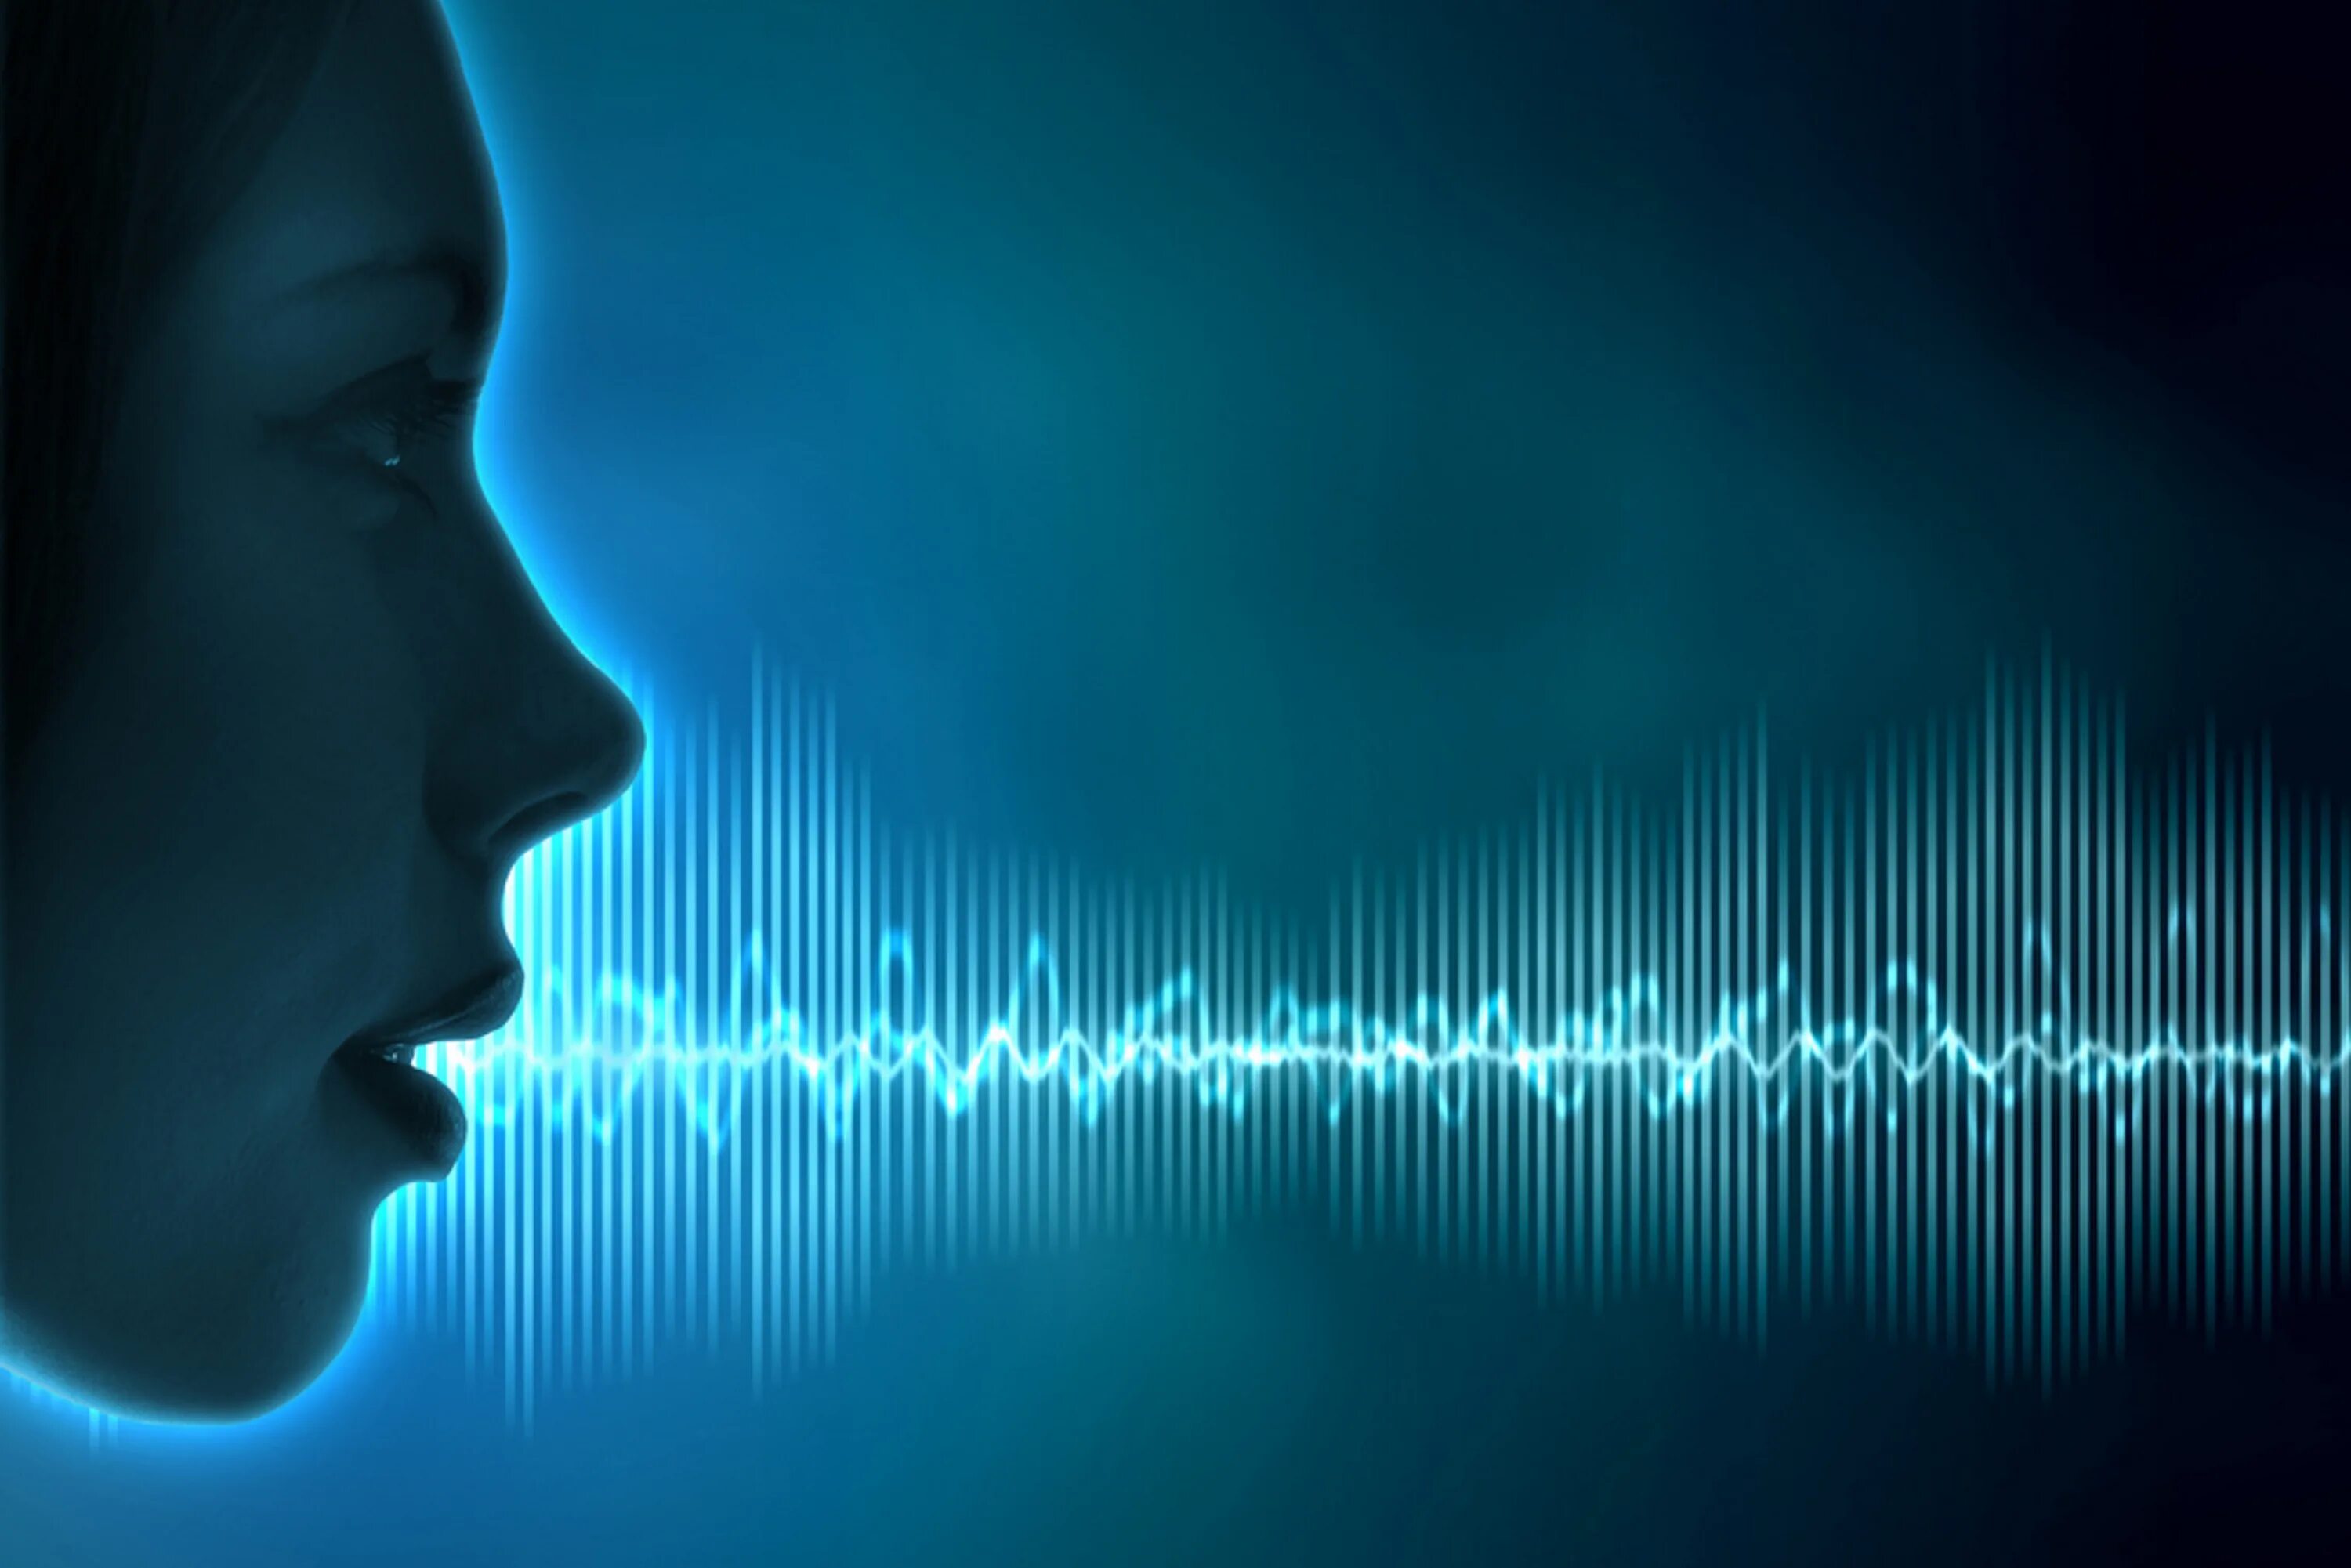 Голос человека. Звуковая волна. Распознавание речи. Голосовая биометрия. Красивый голосовой